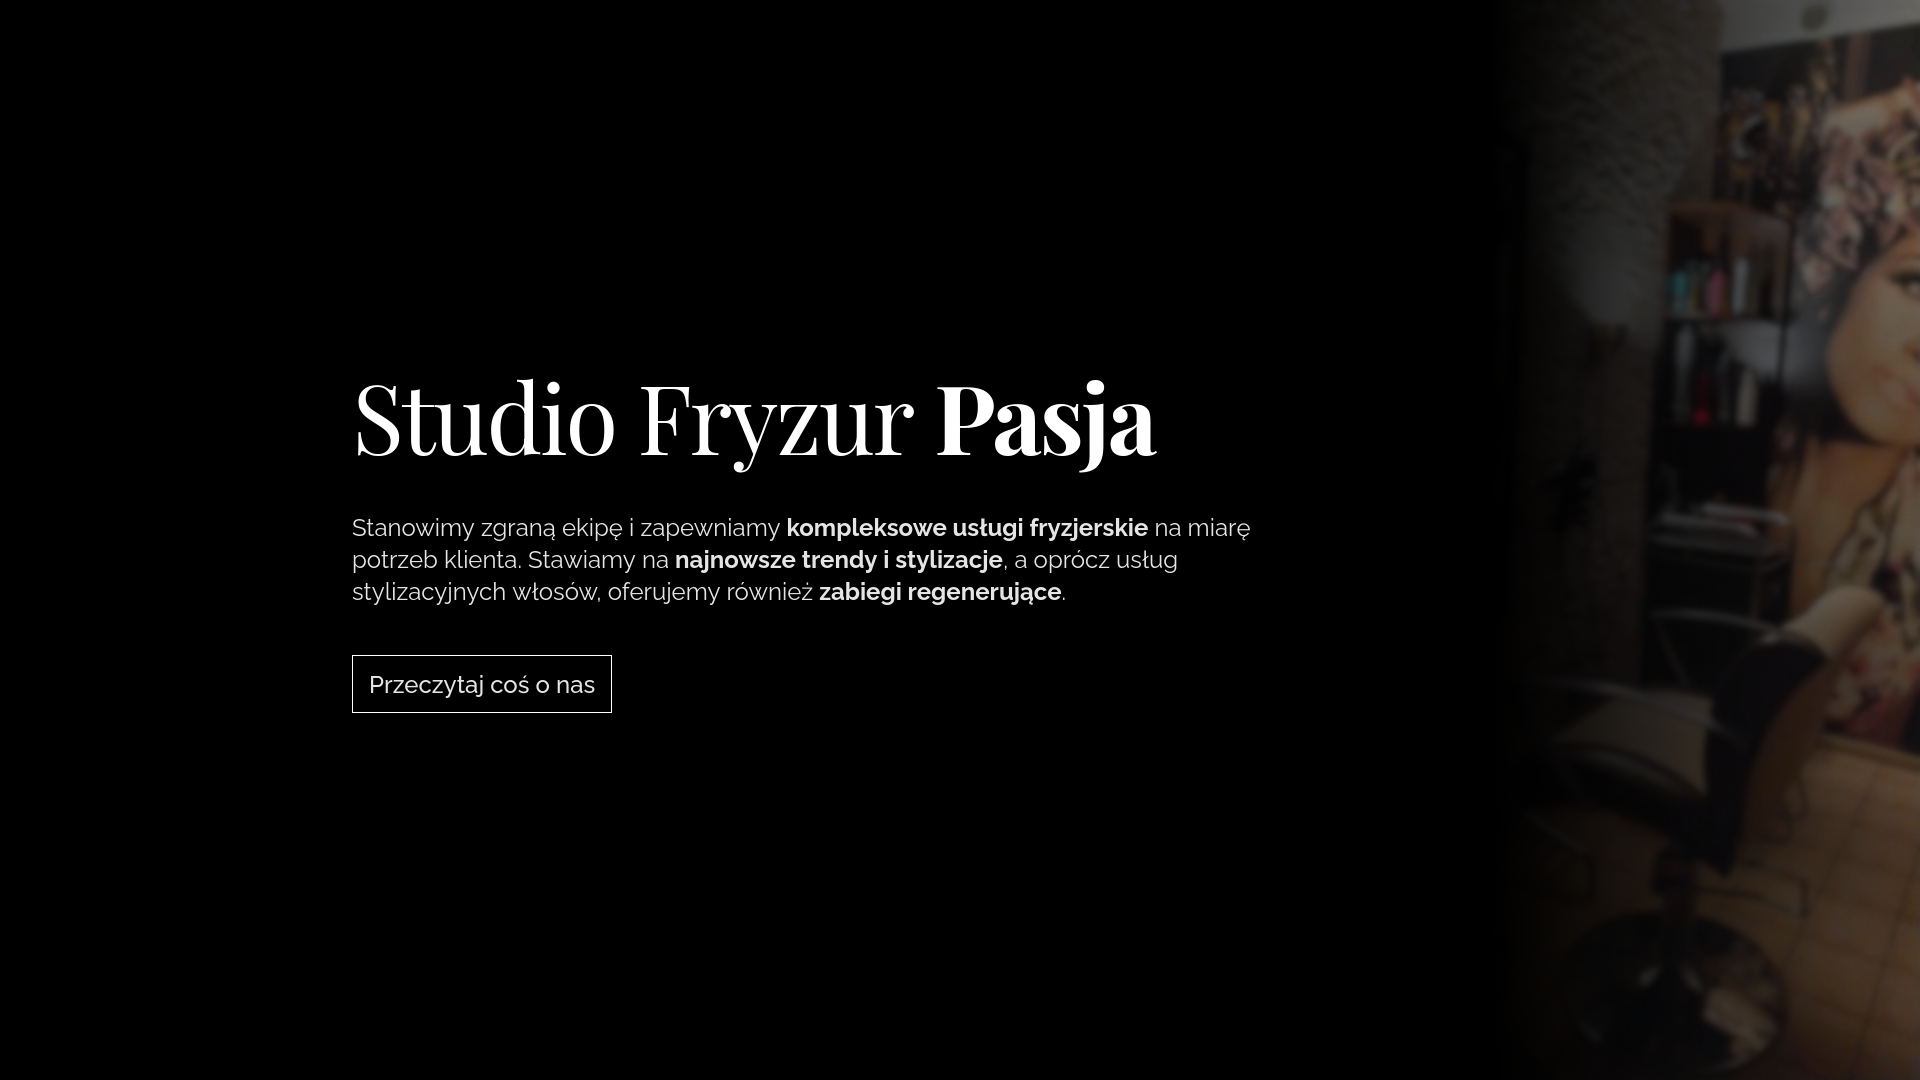 Podgląd strony internetowej Studio Fryzur Pasja.